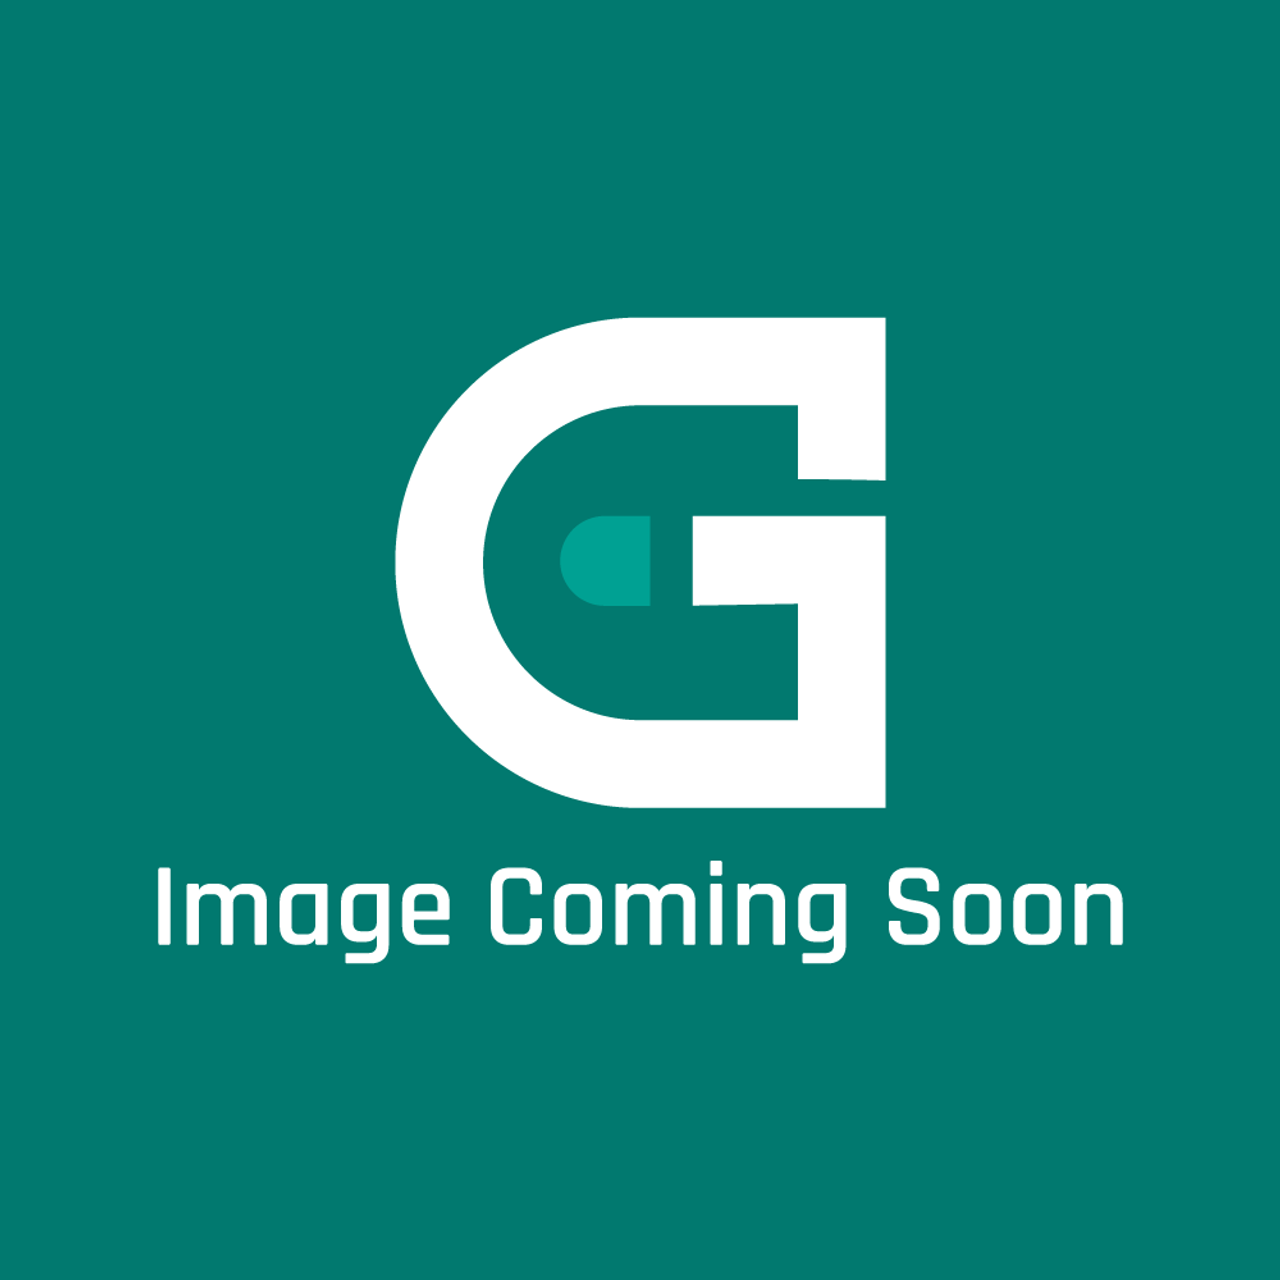 Garland G02639-1-6 - Burner Support Bracket - Image Coming Soon!